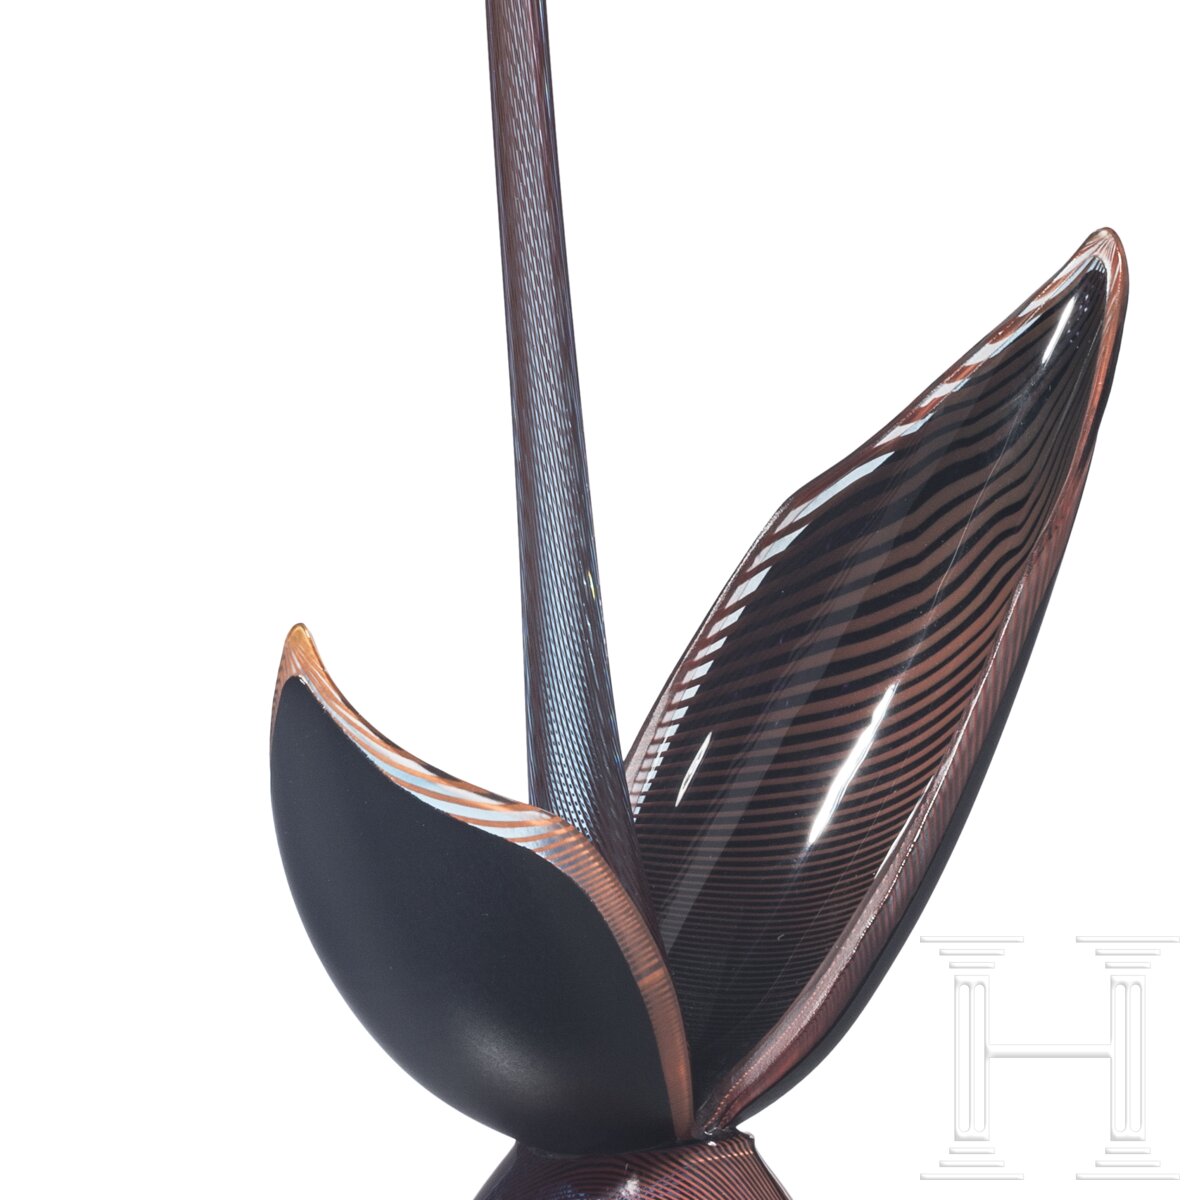 Glasskulptur "Ichibana", Gordon Webster (geboren 1978 in Calgary), datiert 2012 - Image 6 of 7